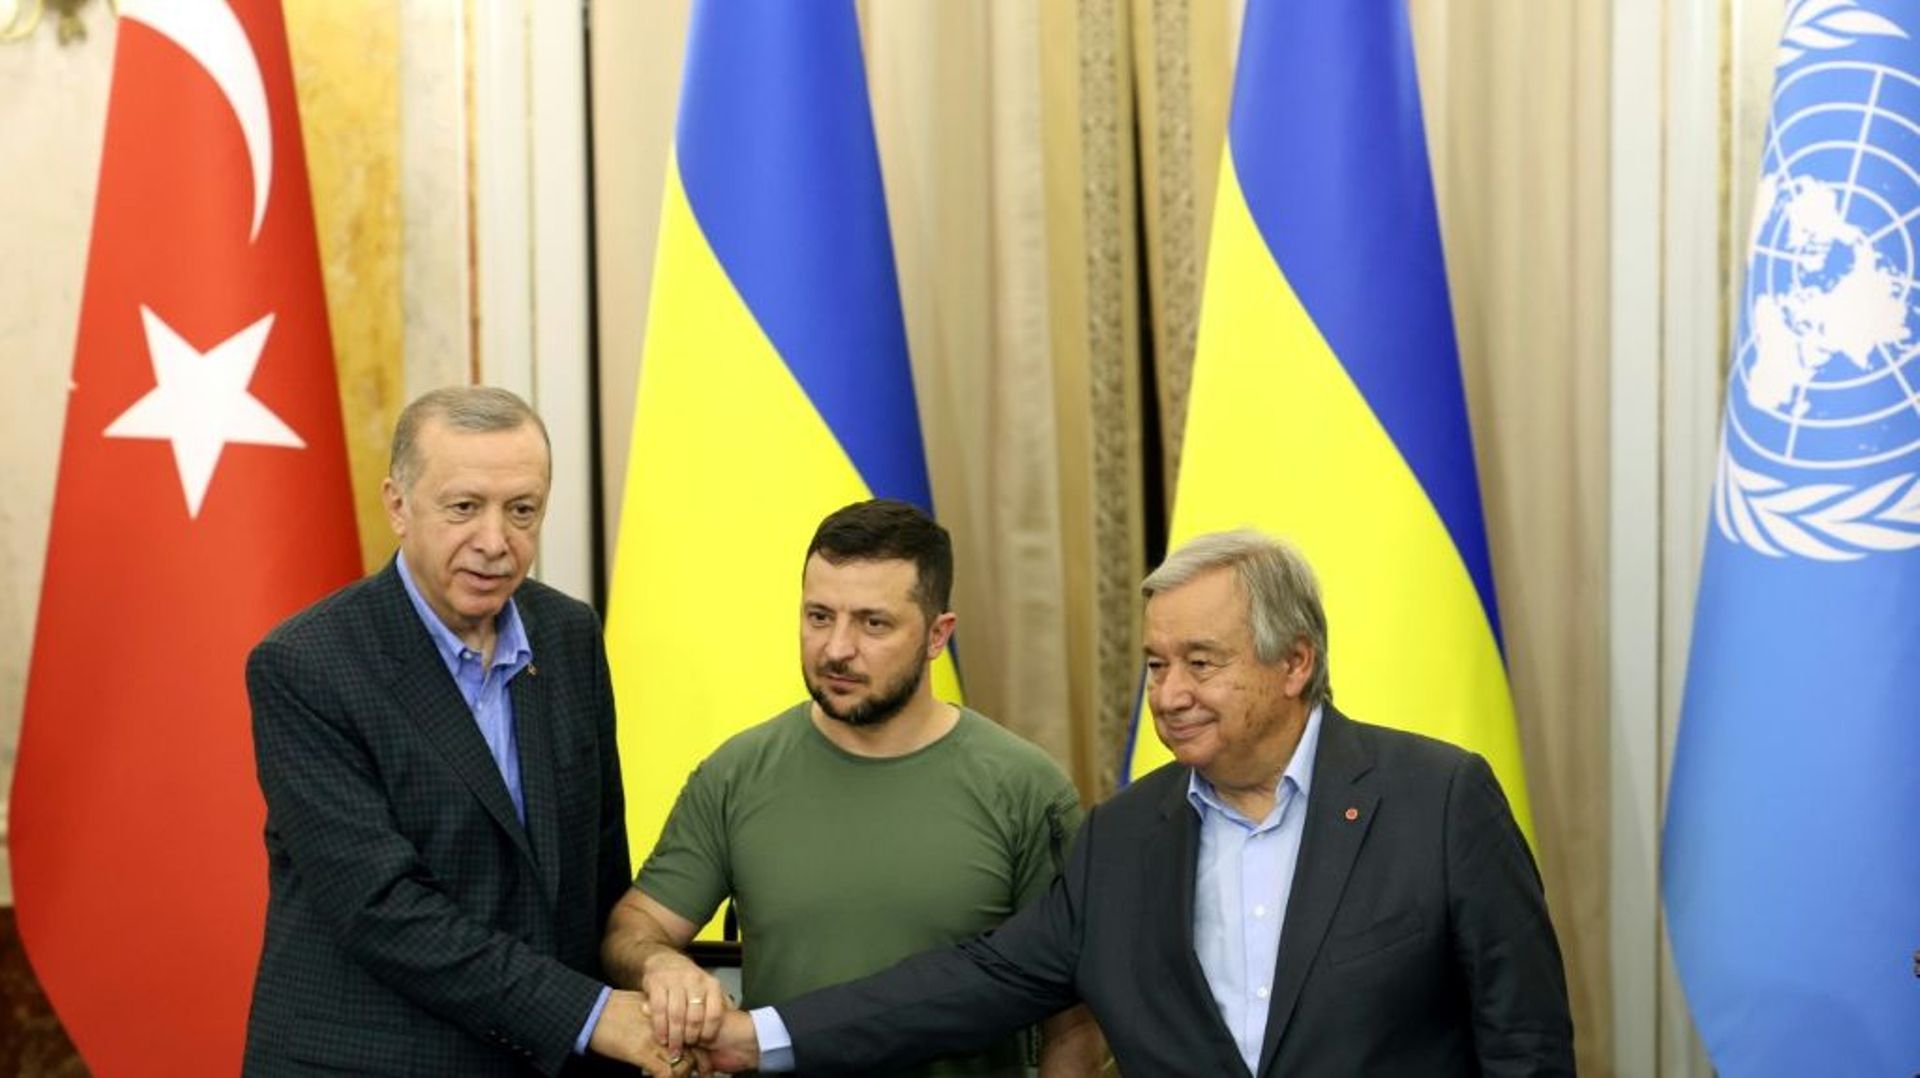 Le président turc Recep Tayyip Erdogan (à gauche) avec son homologue ukrainien Volodymyr Zelensky (centre) et le secrétaire général de l’ONU, Antonio Guterres (droite), le 19 août 2022 à Lviv, dans l’ouest de l’Ukraine